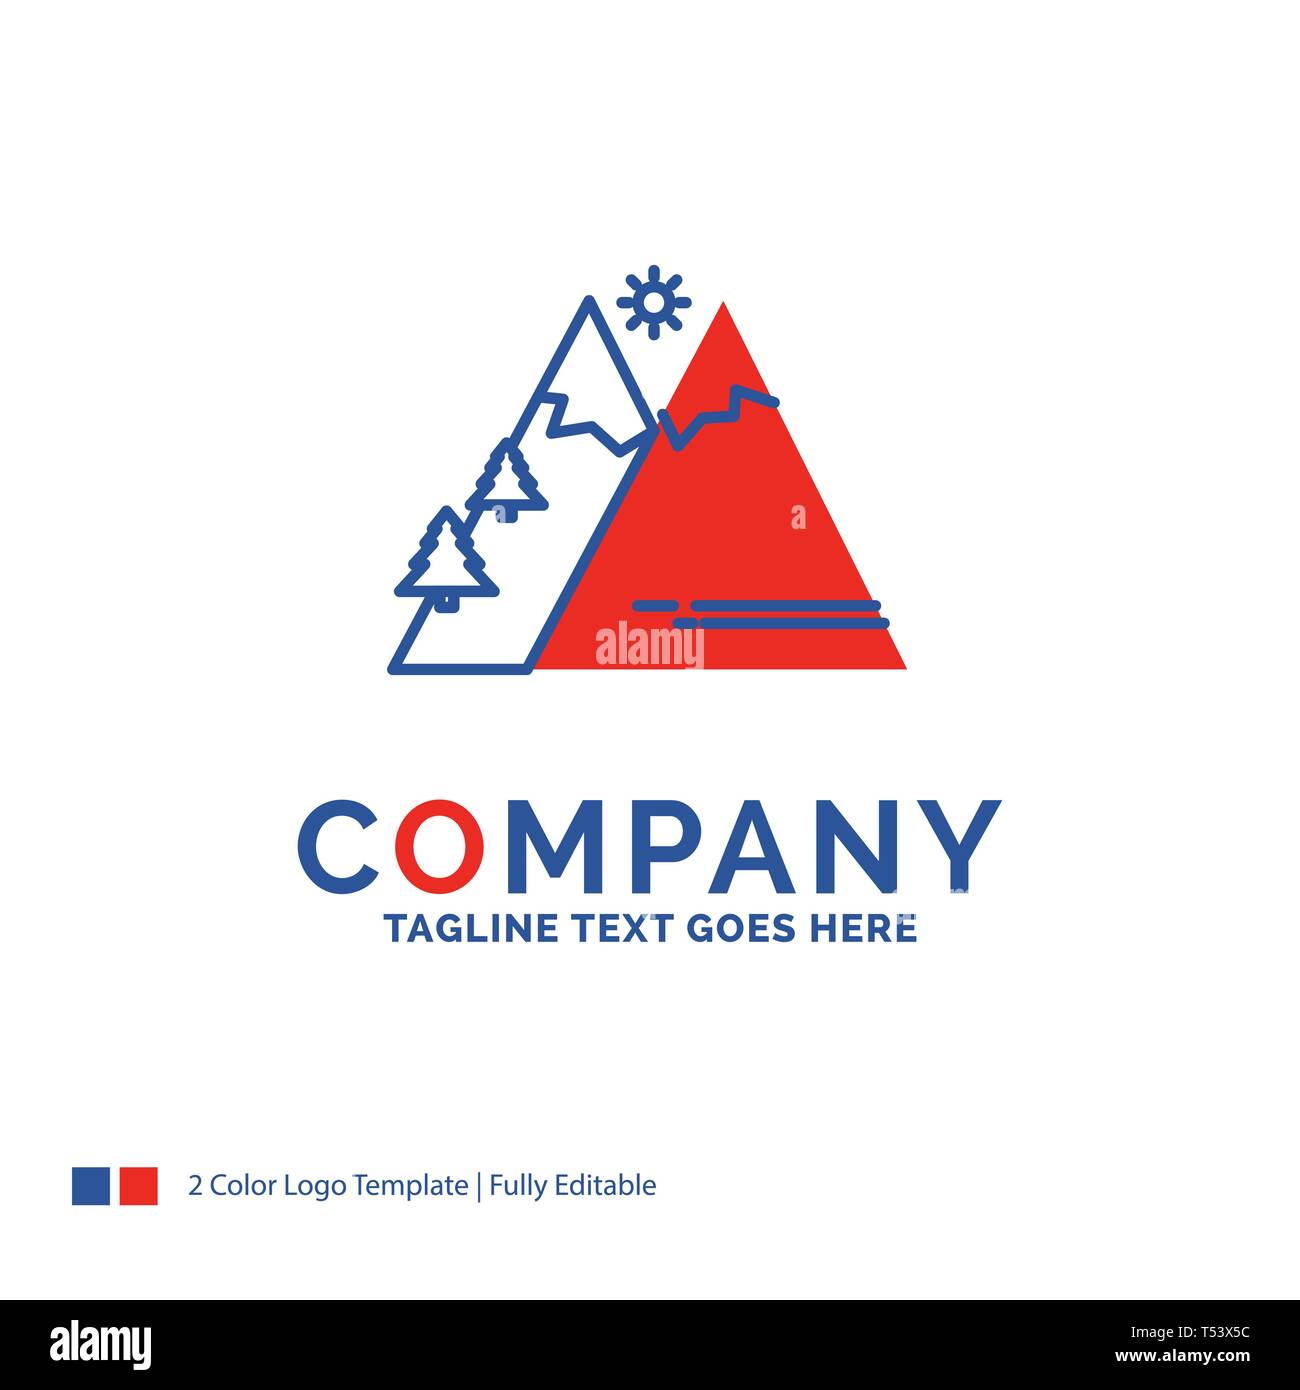 Firmenlogo Design für Berge, Natur, Outdoor, Sonne, Wandern. Blau und Rot  Marke Design mit Platz für Tagline. Abstrakt kreativ Logo te  Stock-Vektorgrafik - Alamy